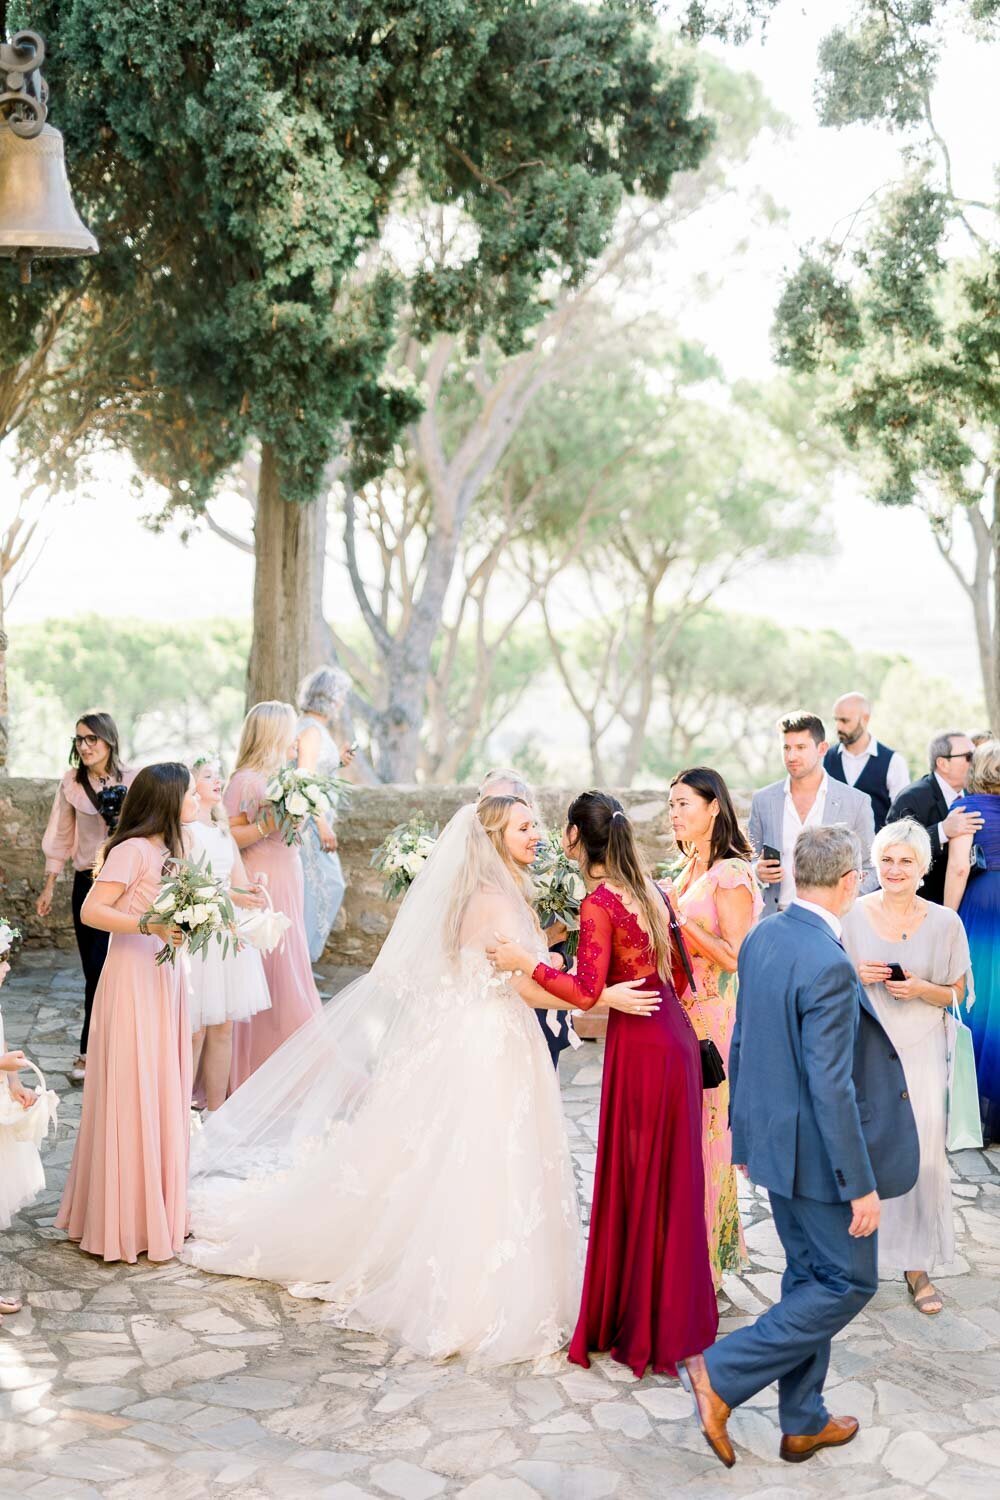 Congratulations during wedding at Castello di segalari